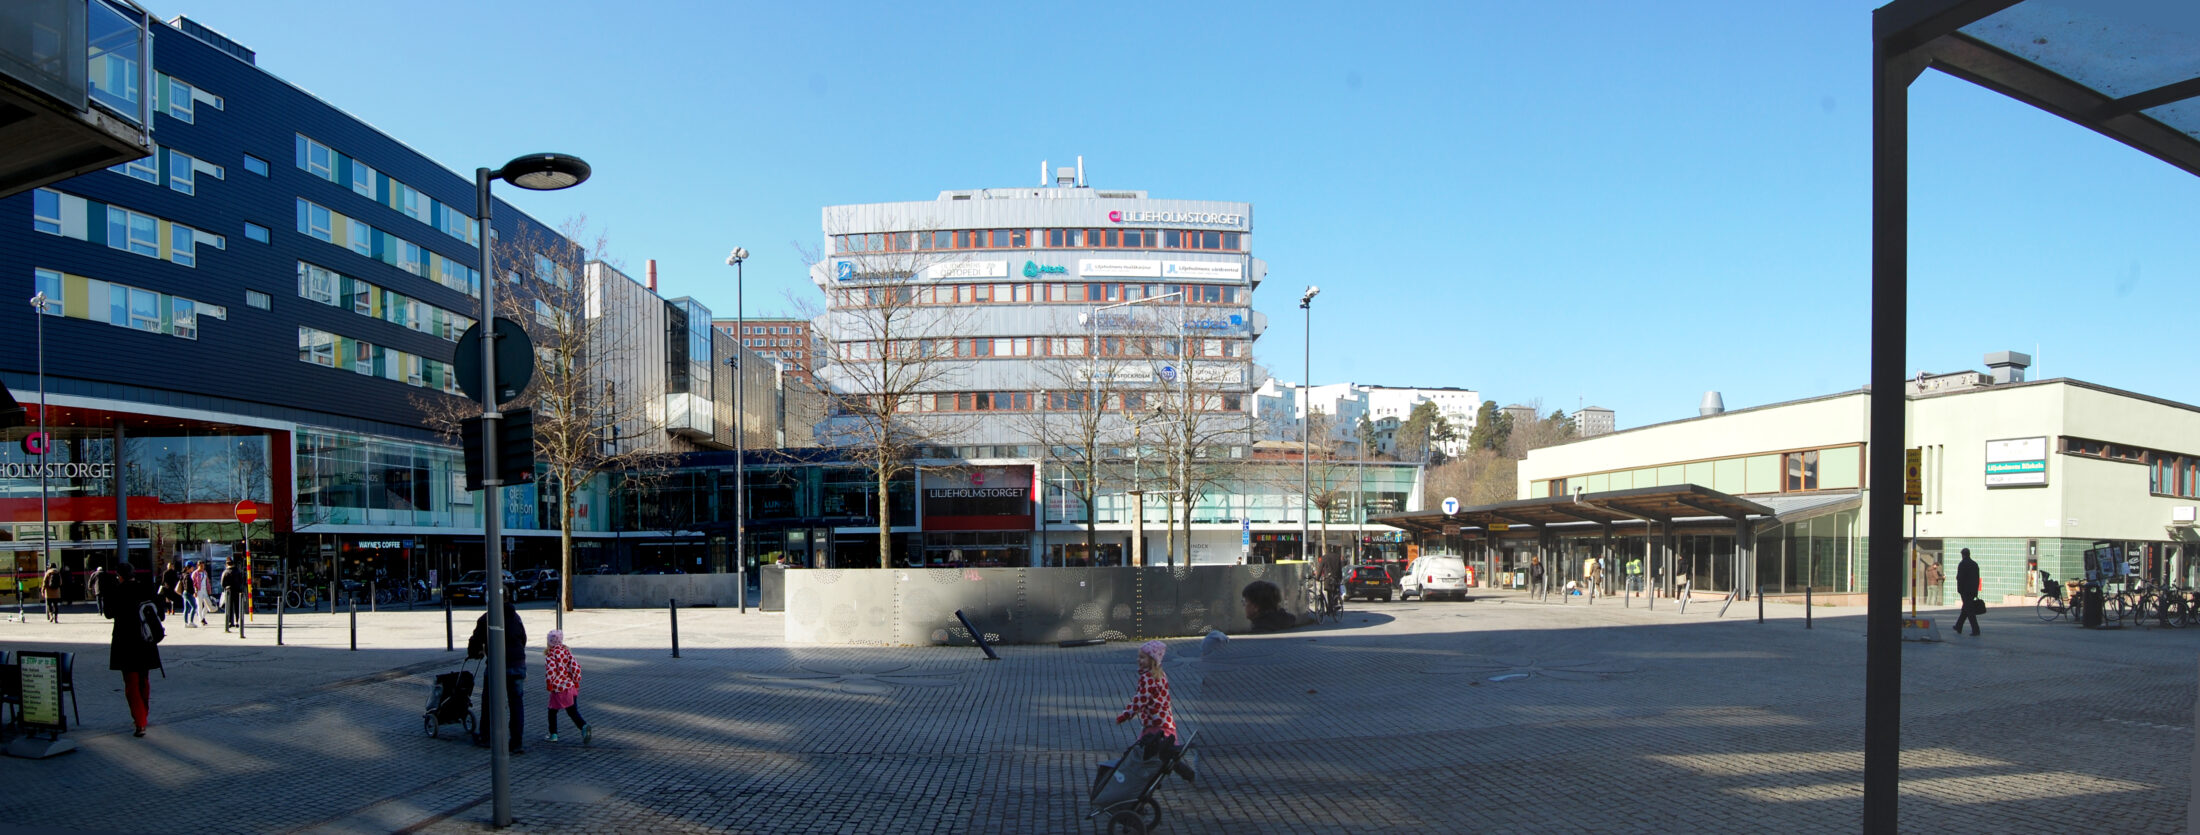 Liljeholmen centrum kulturmiljöutredning. Nyréns antikvarier